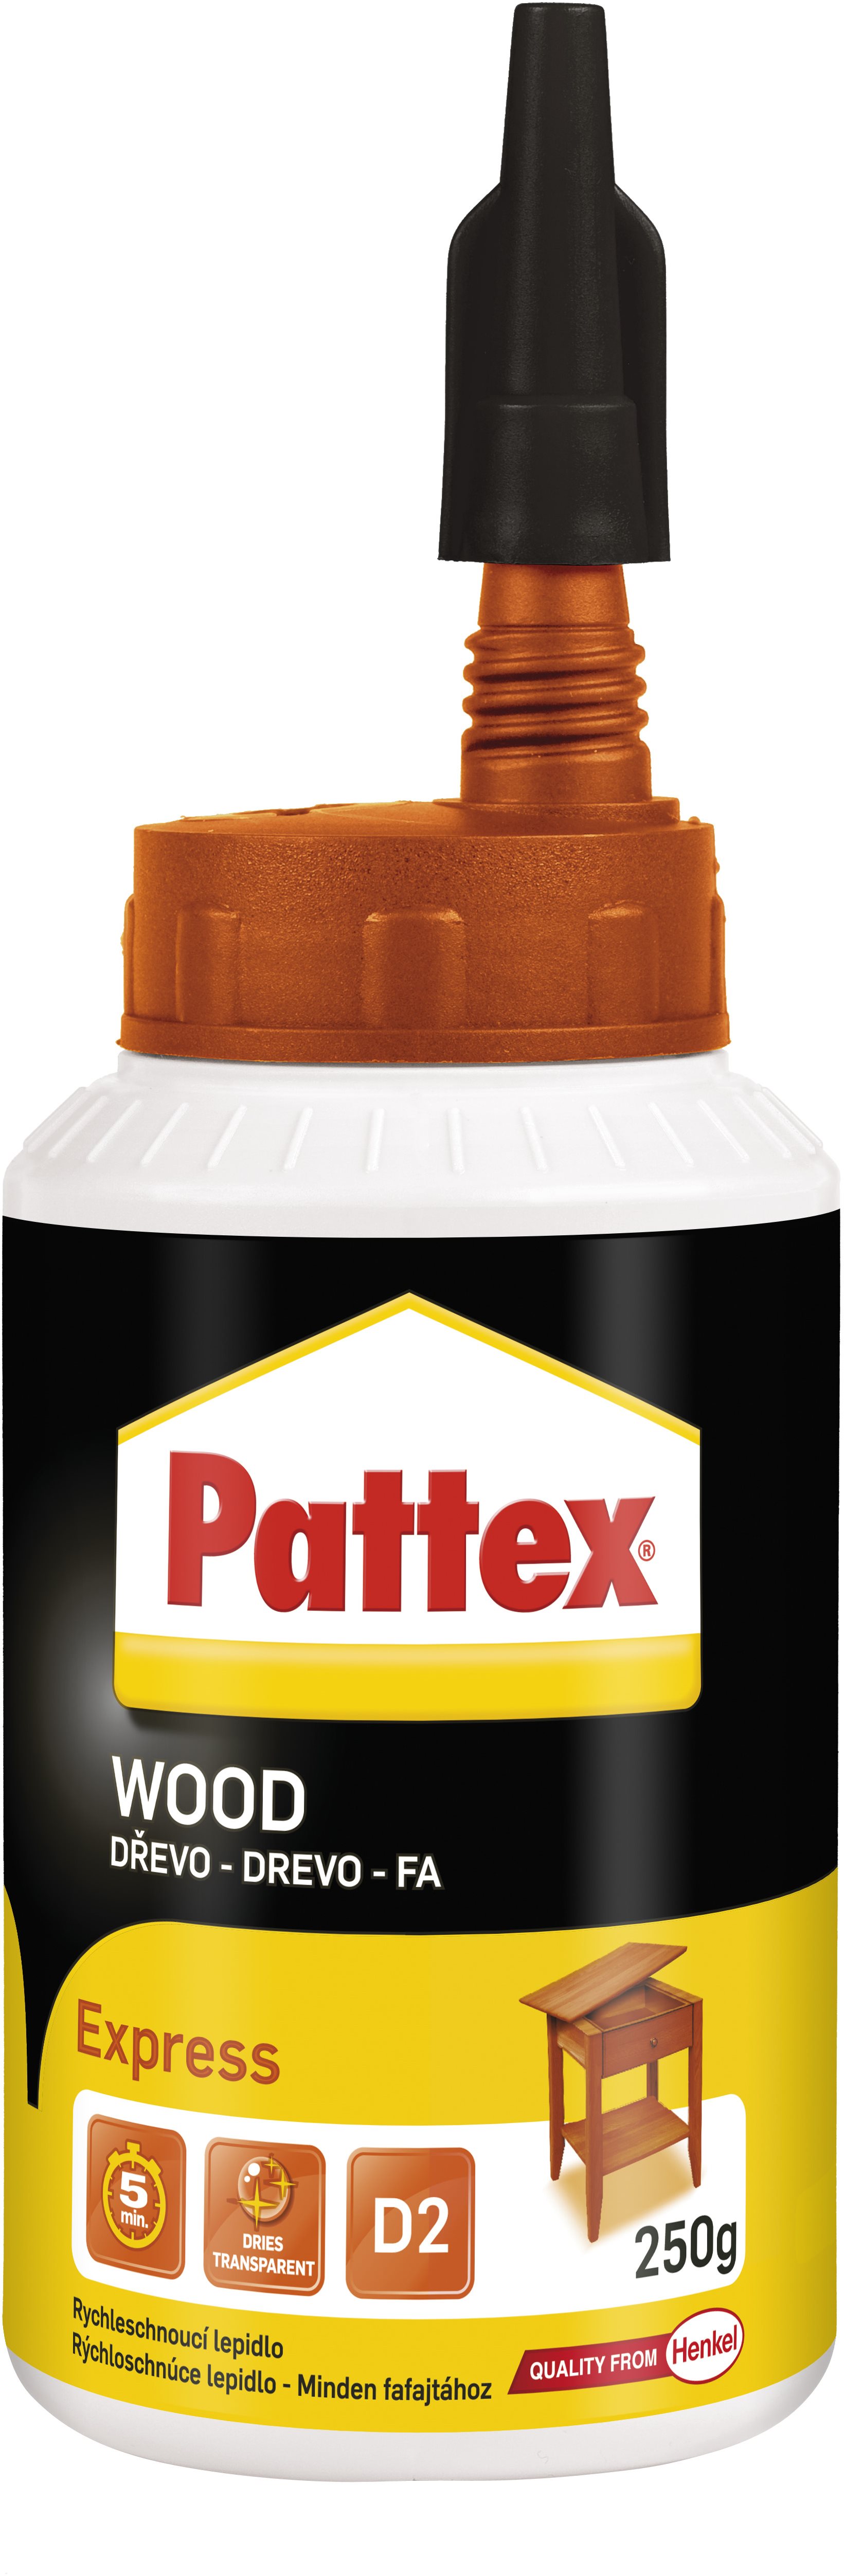 PATTEX Express 250 g